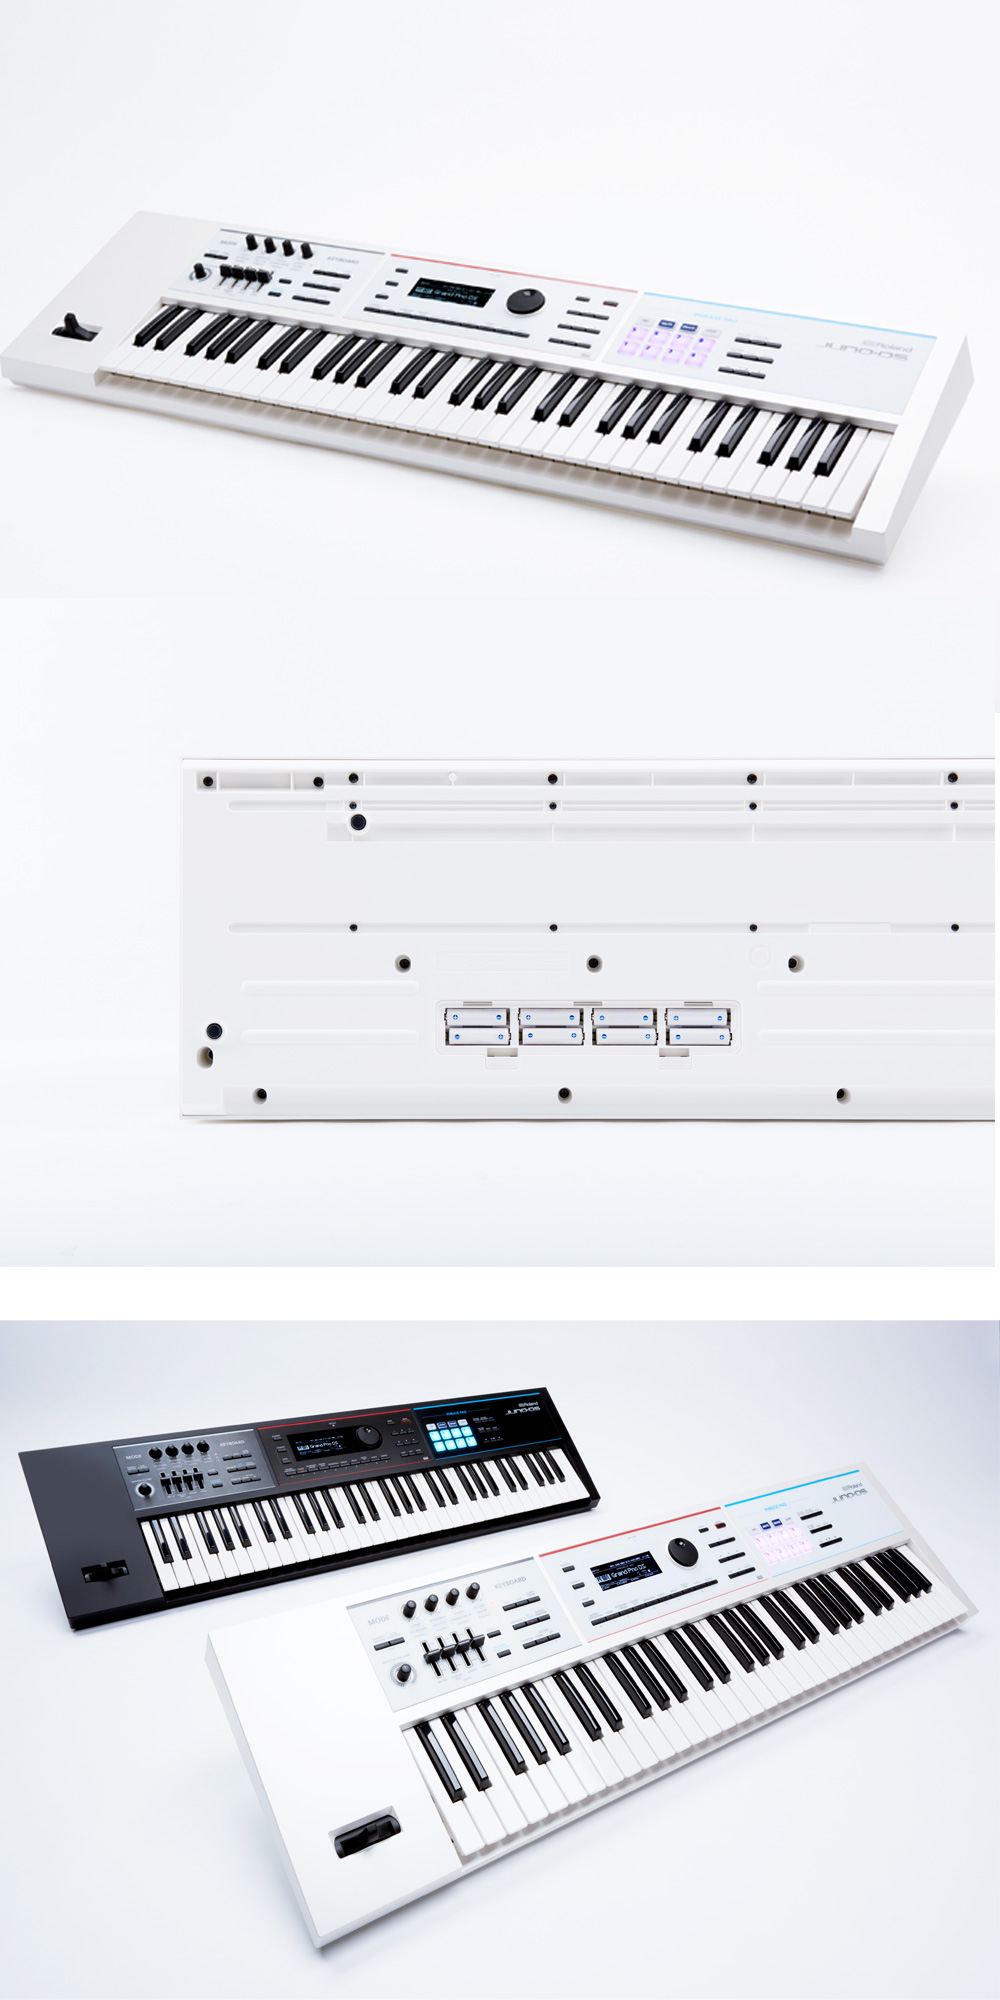 Rolandの多機能シンセサイザー「JUNO-DS61」にホワイトバージョンが誕生いたしました！